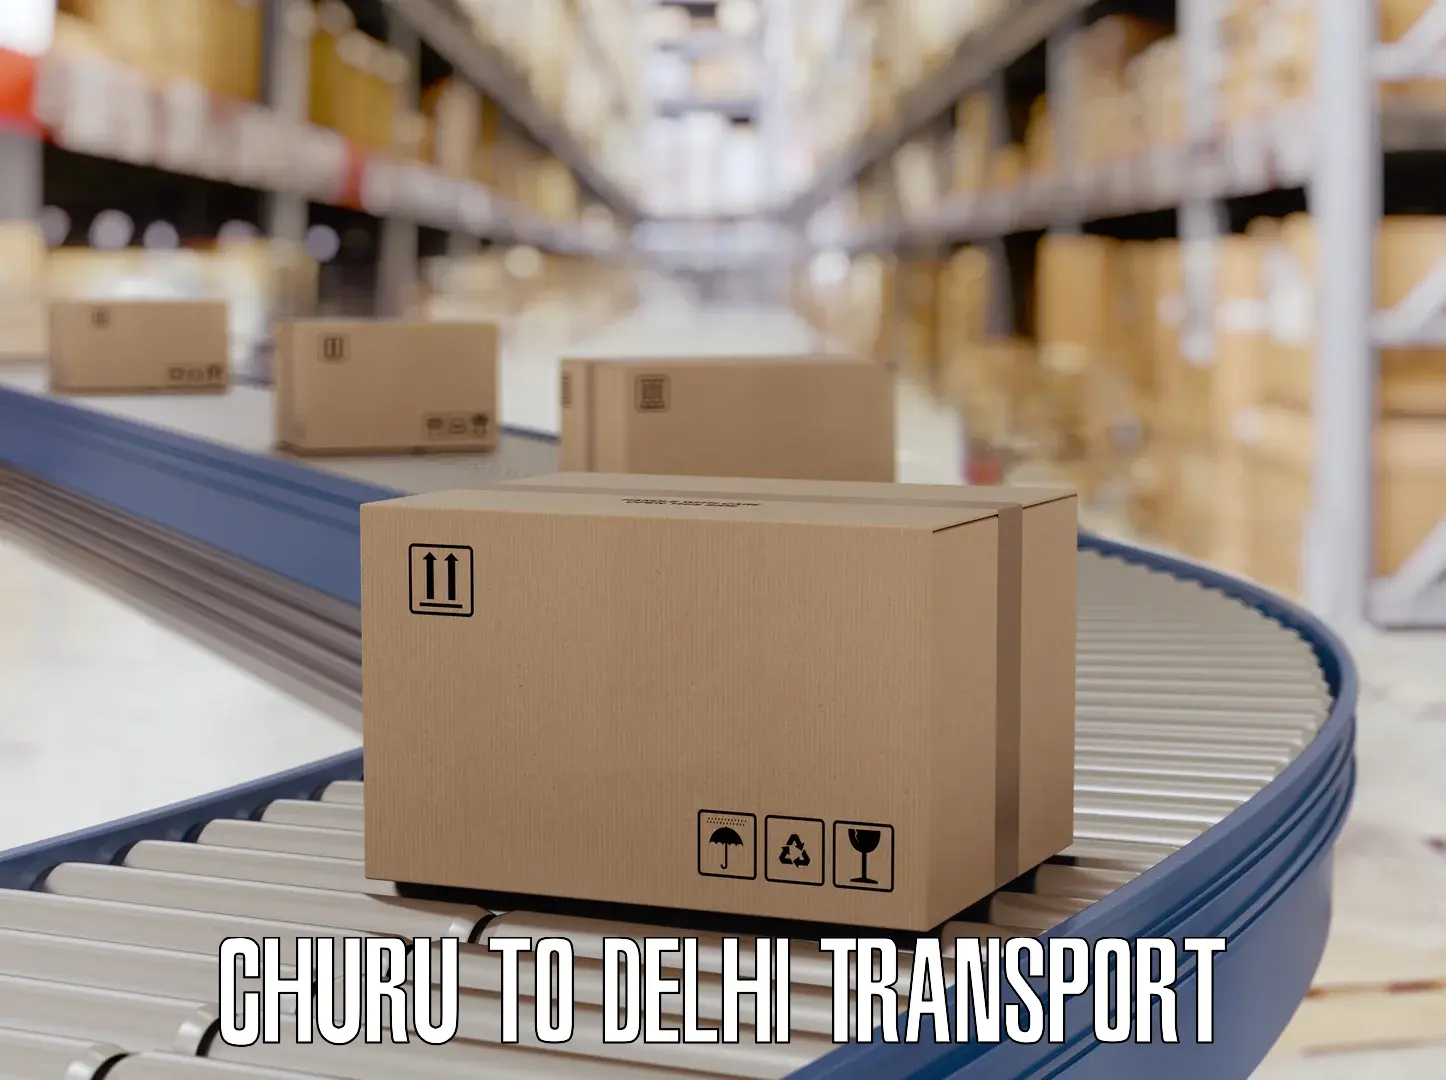 Daily transport service Churu to Jamia Millia Islamia New Delhi